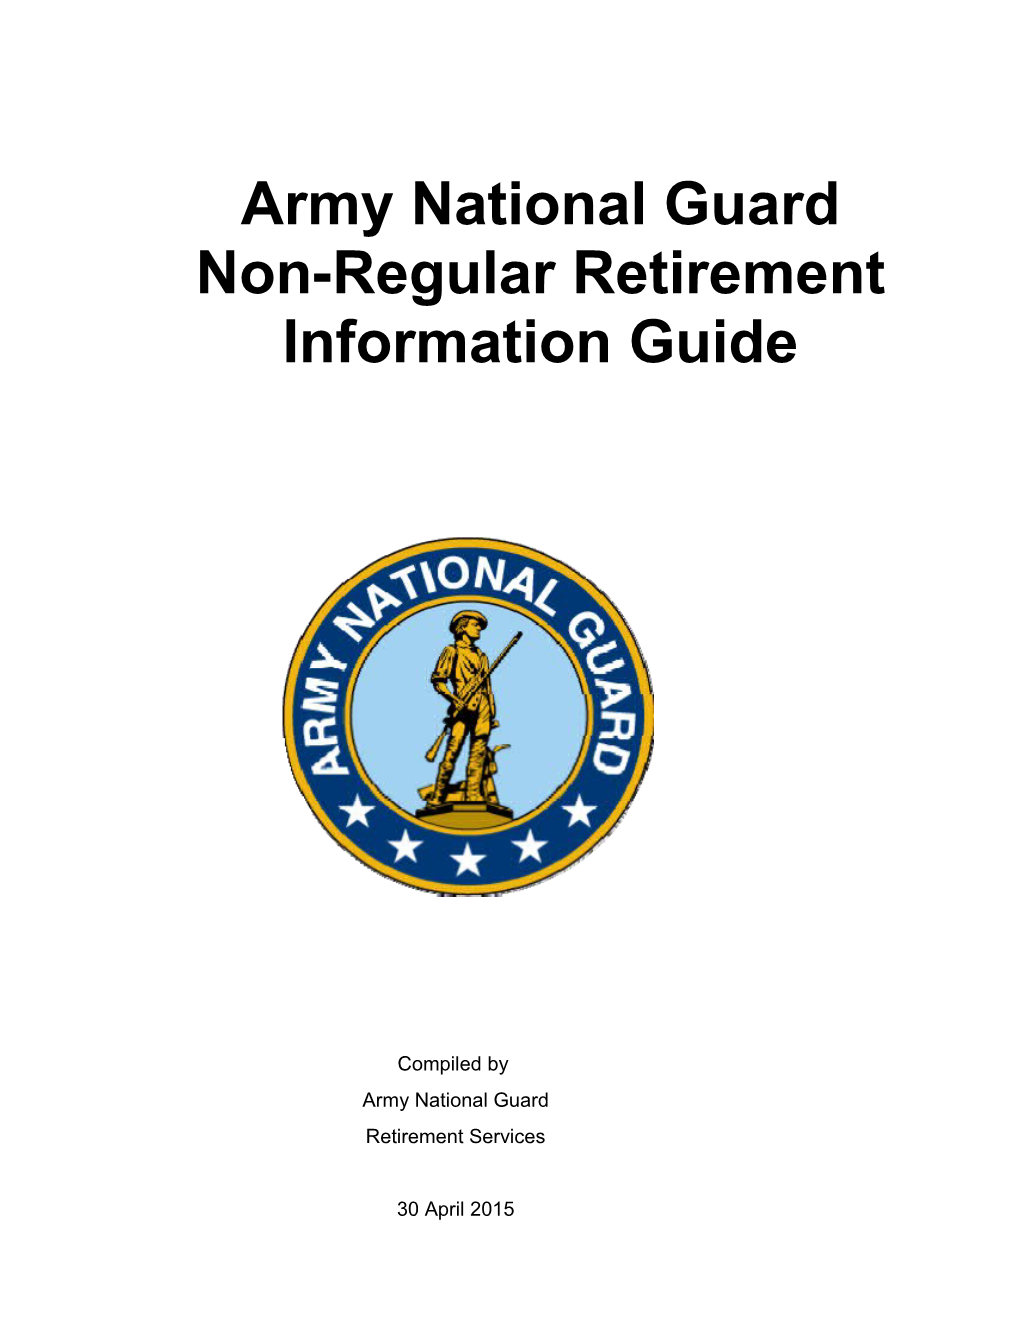 ARNG Information Guide